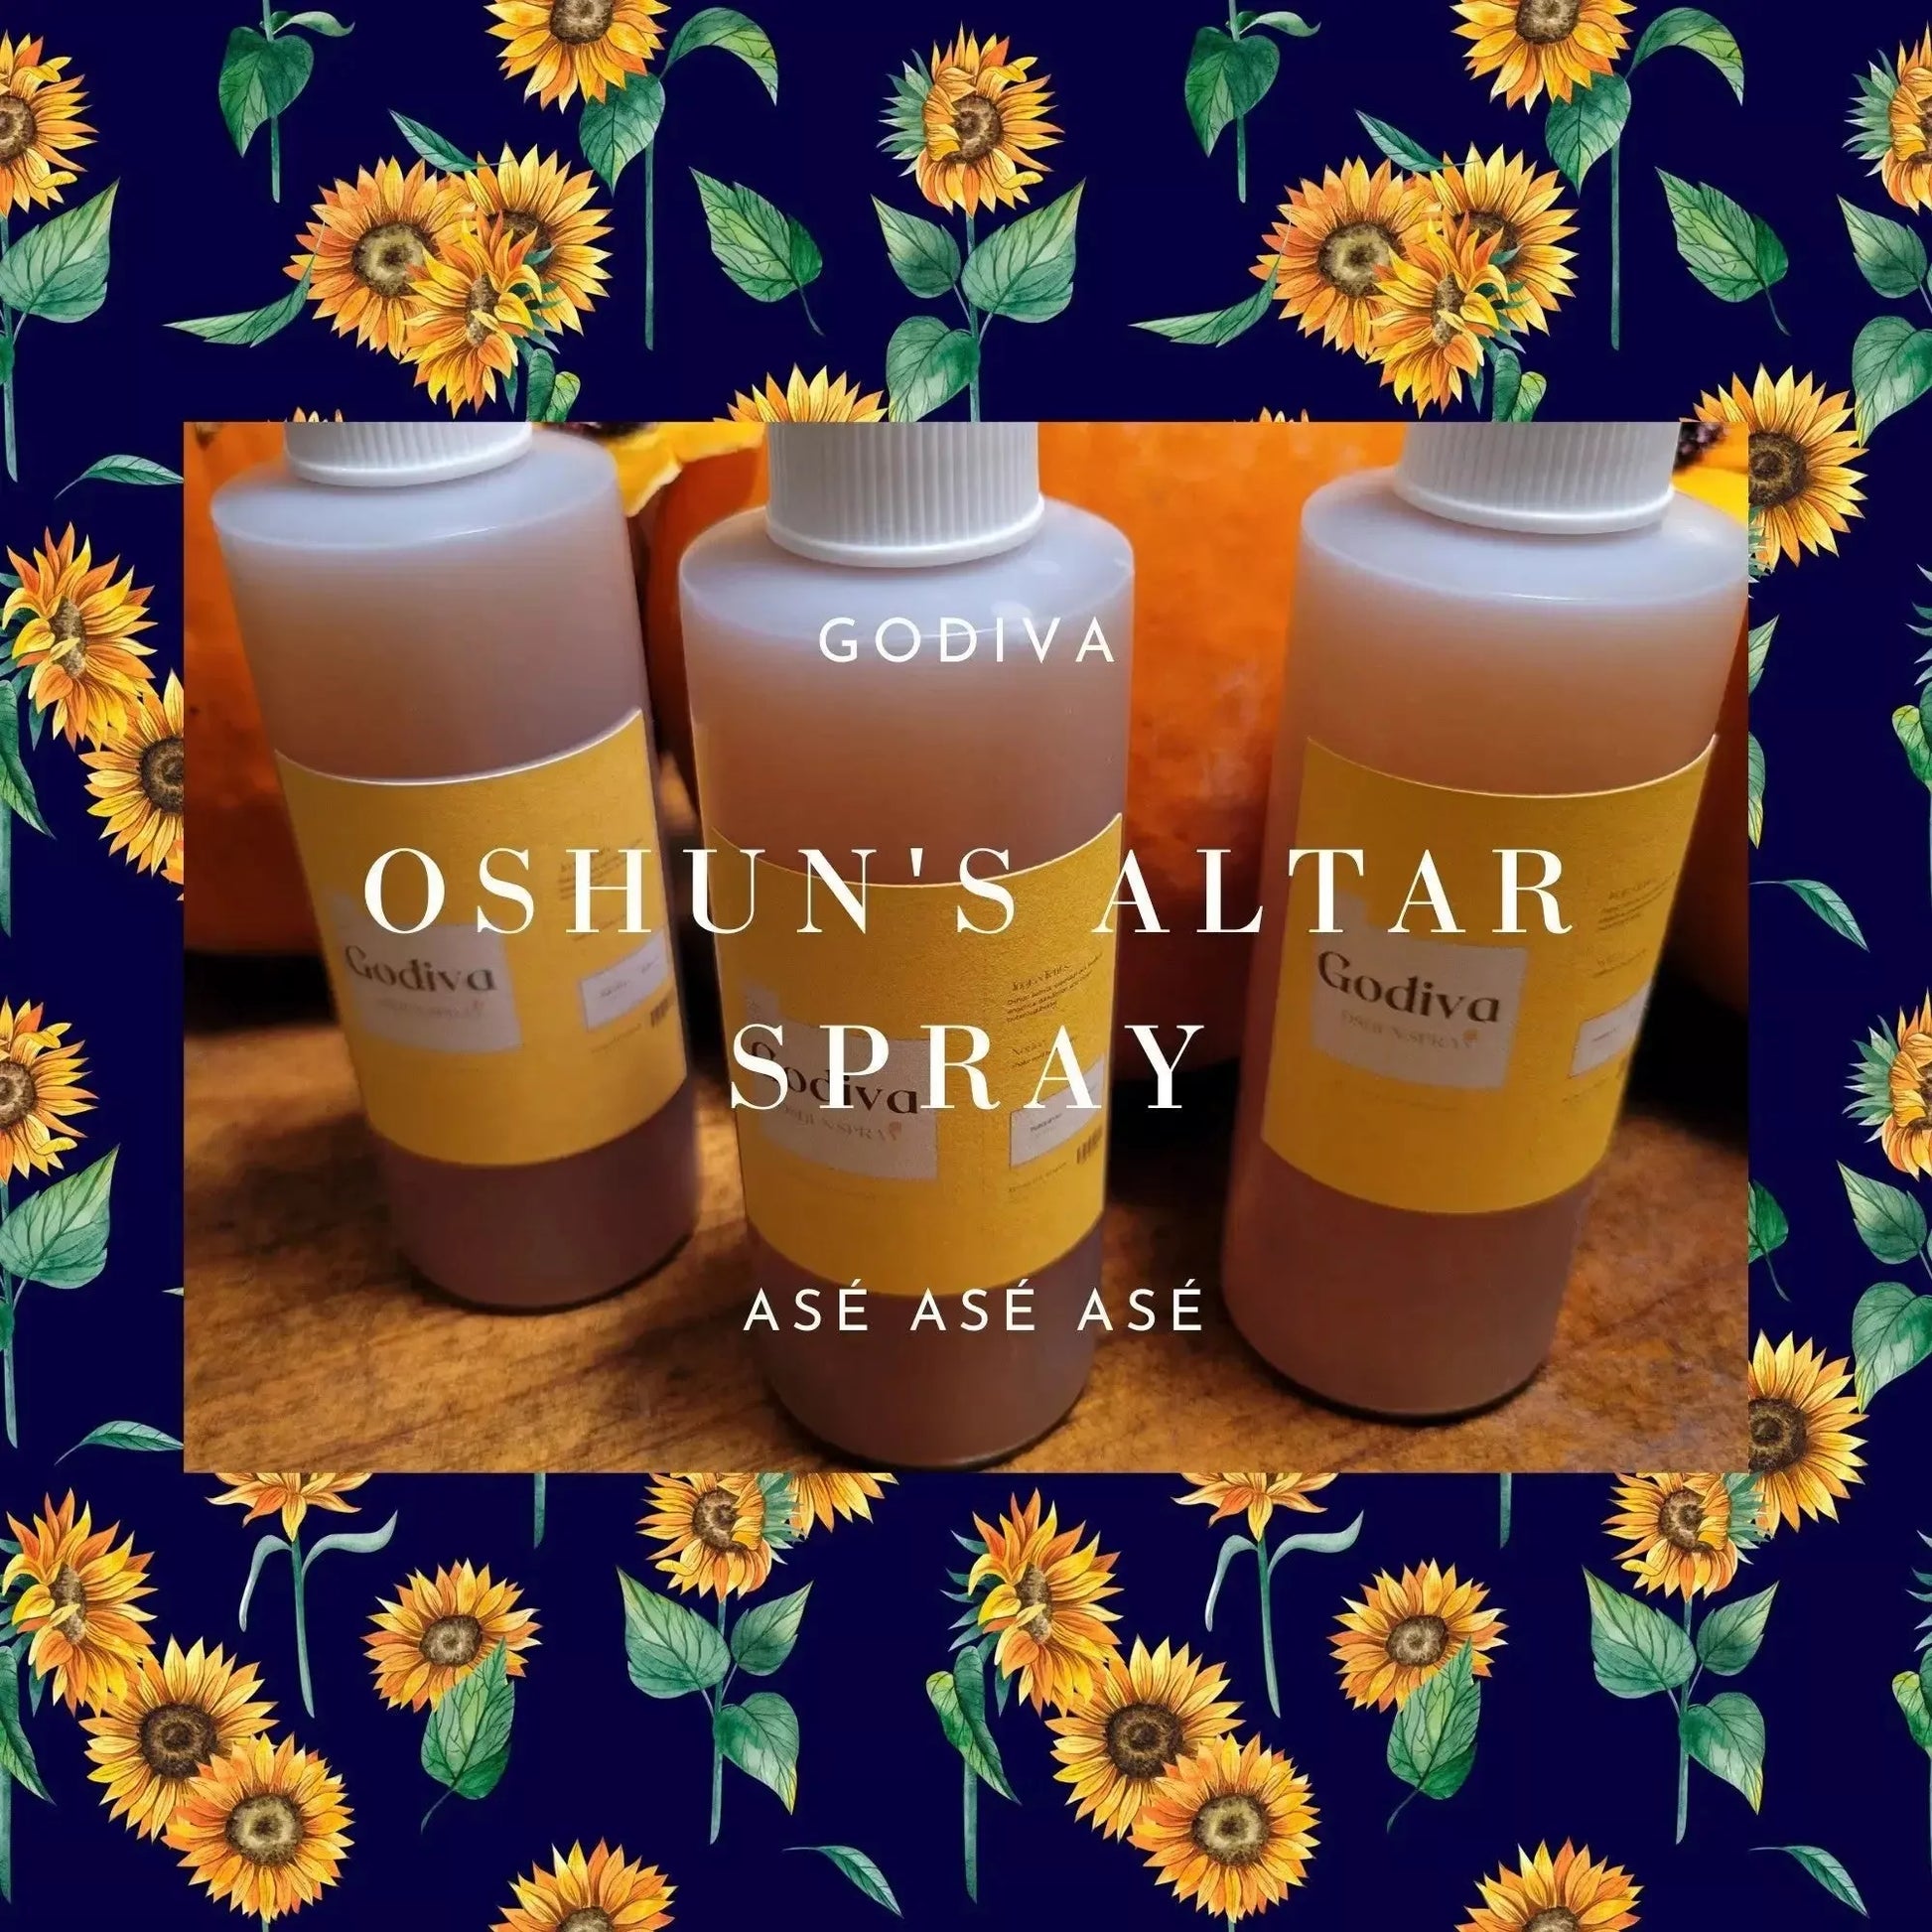 Room spray Oshun's Altar Spray - Godiva Oya Bey